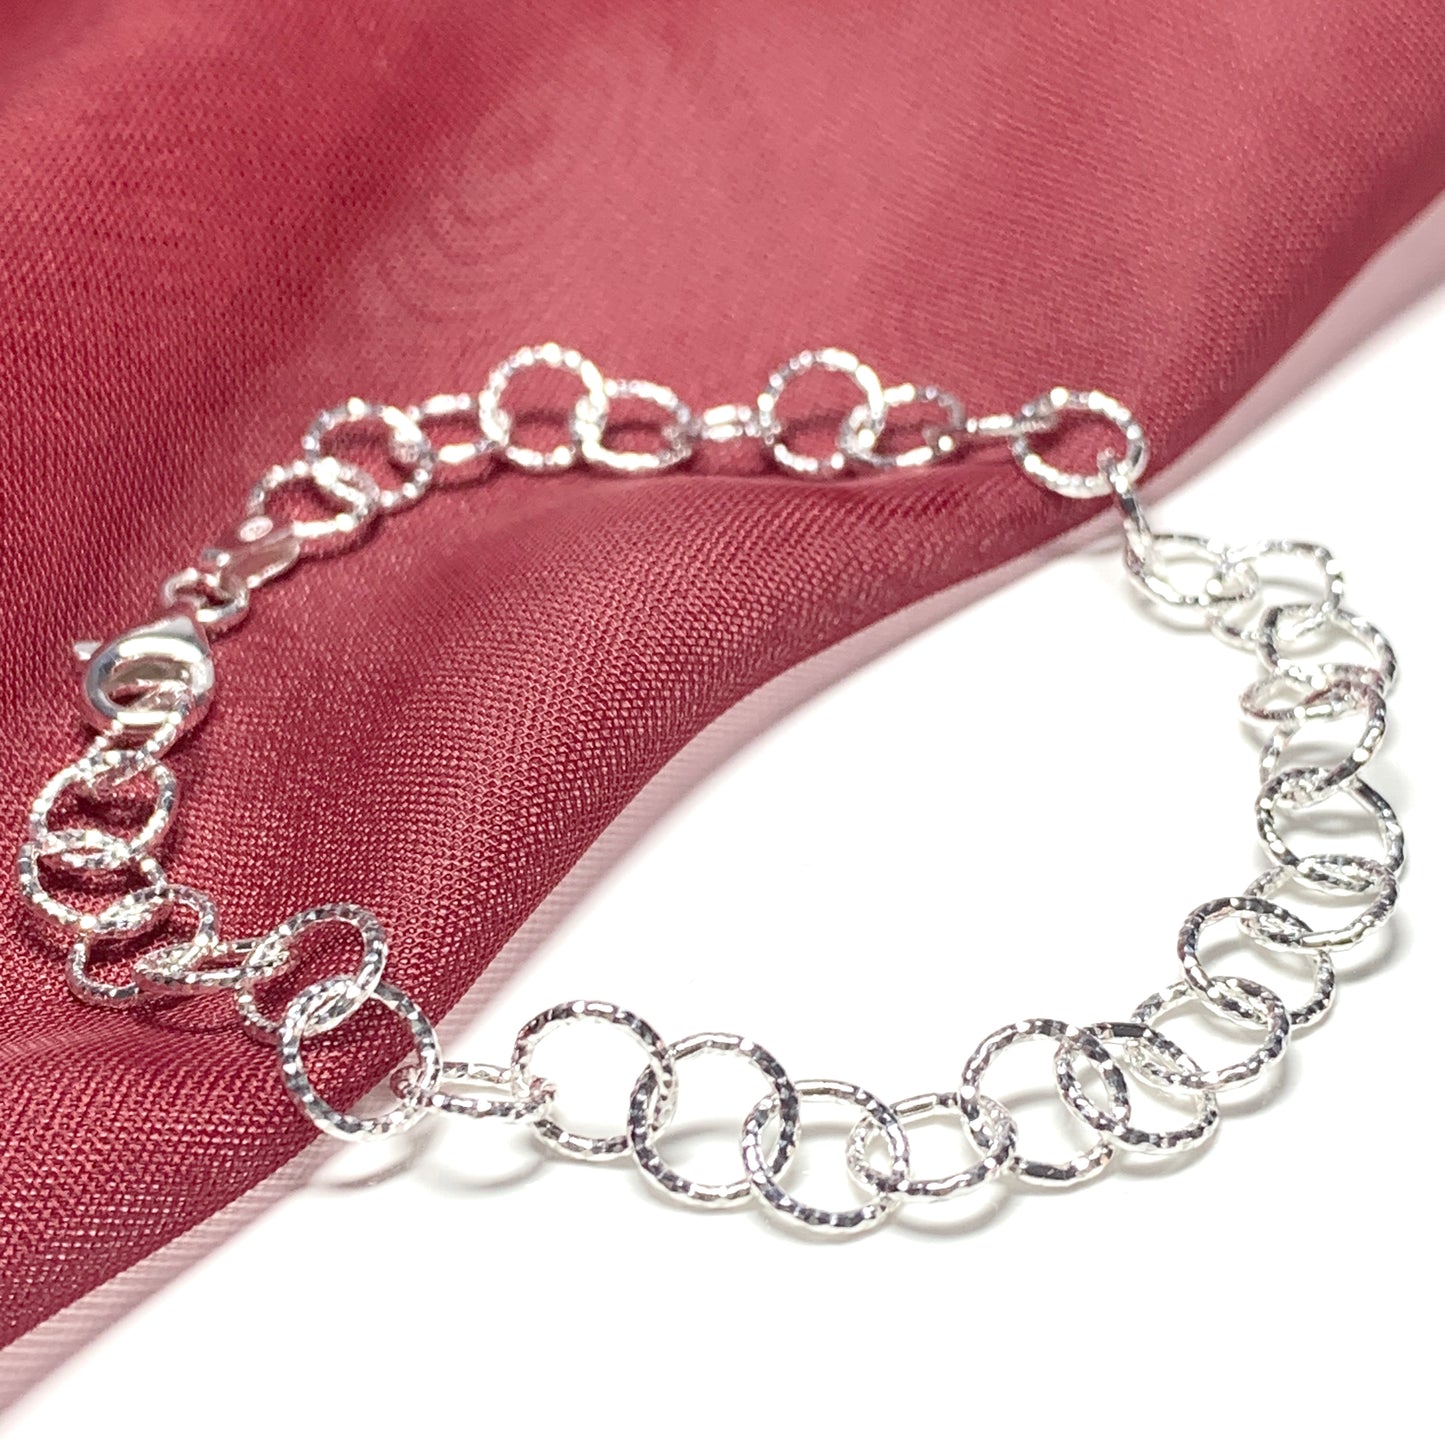 Ladies patterned round belcher link sterling silver bracelet